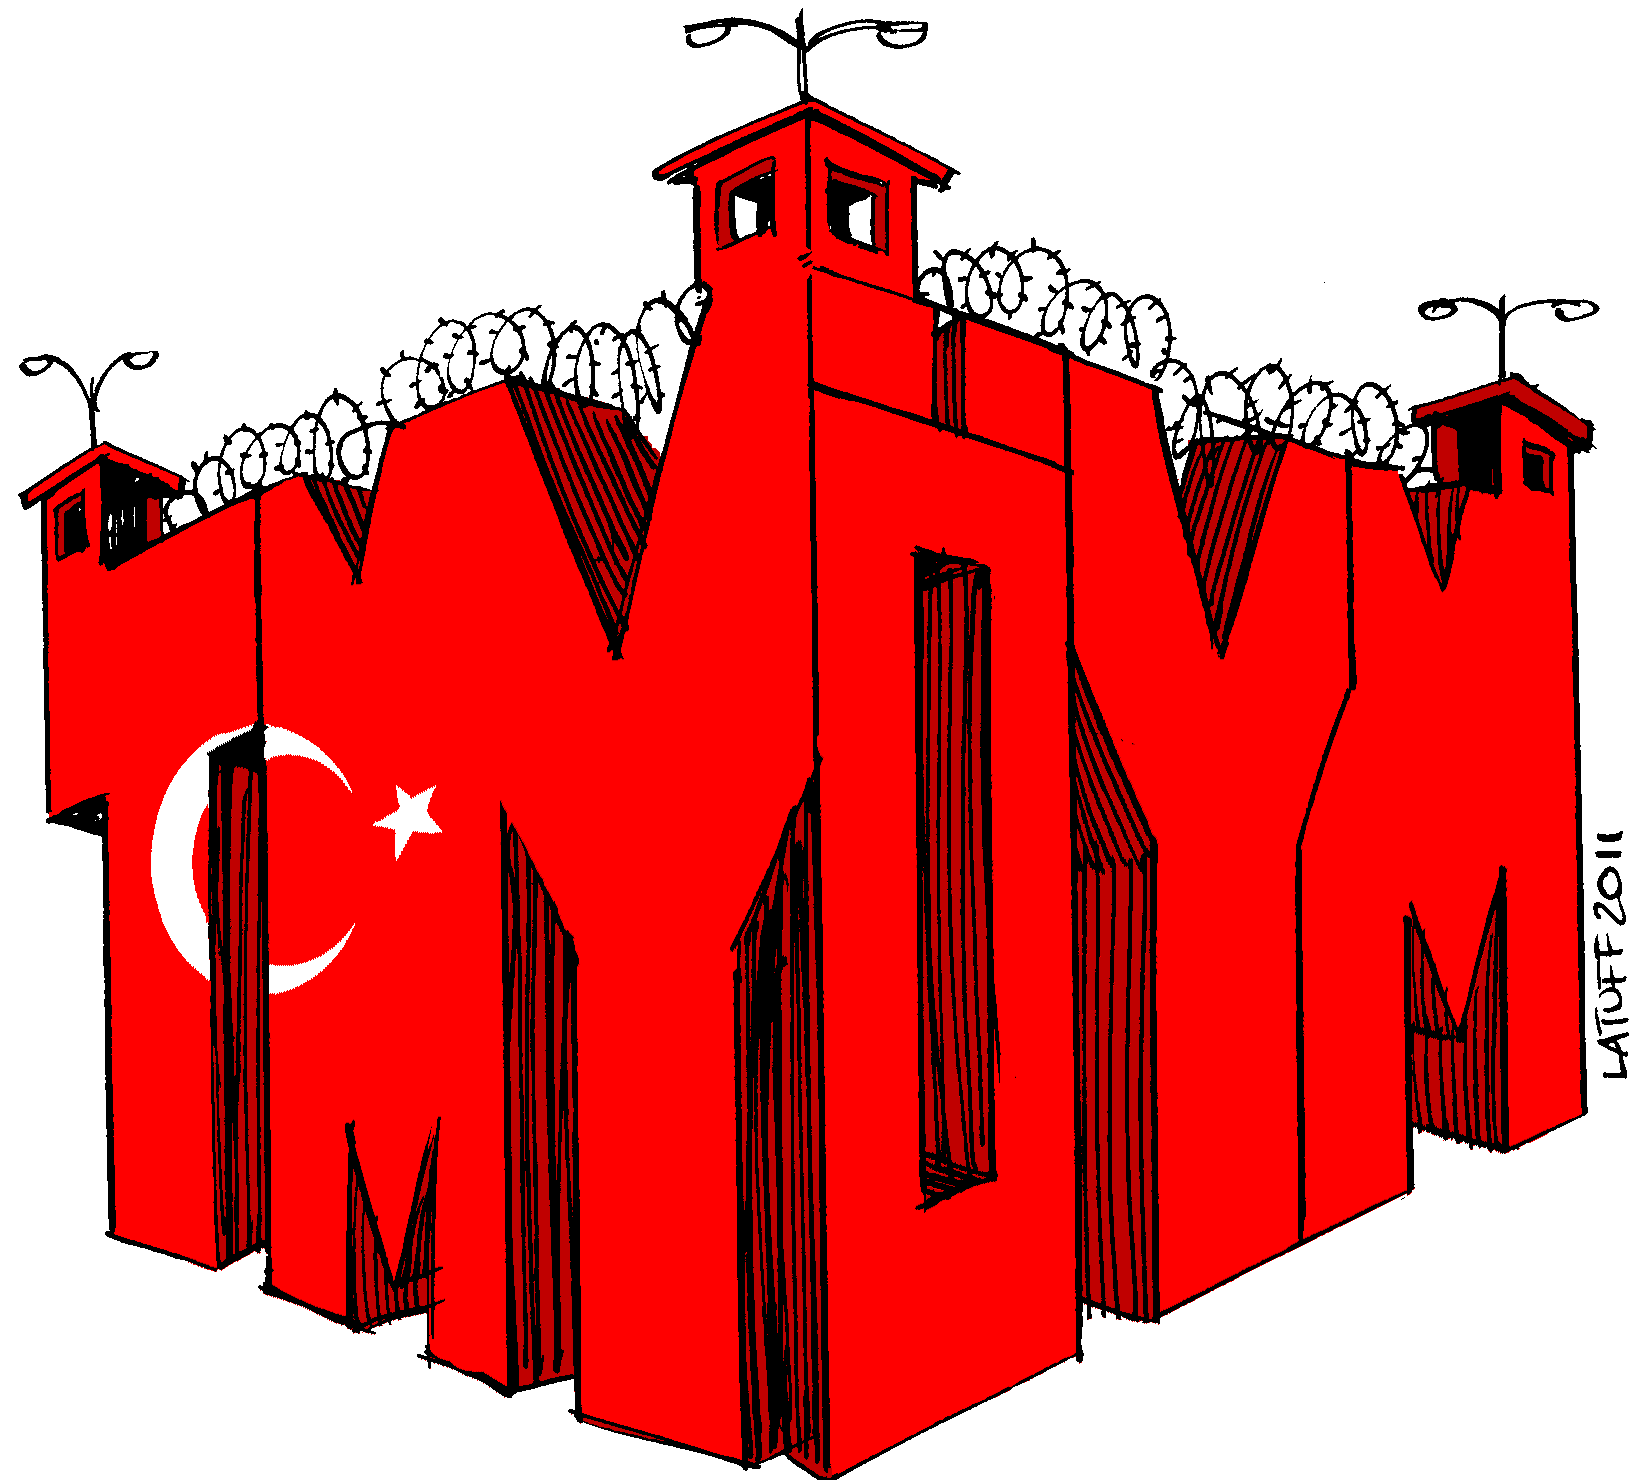 TMY and ÖYM